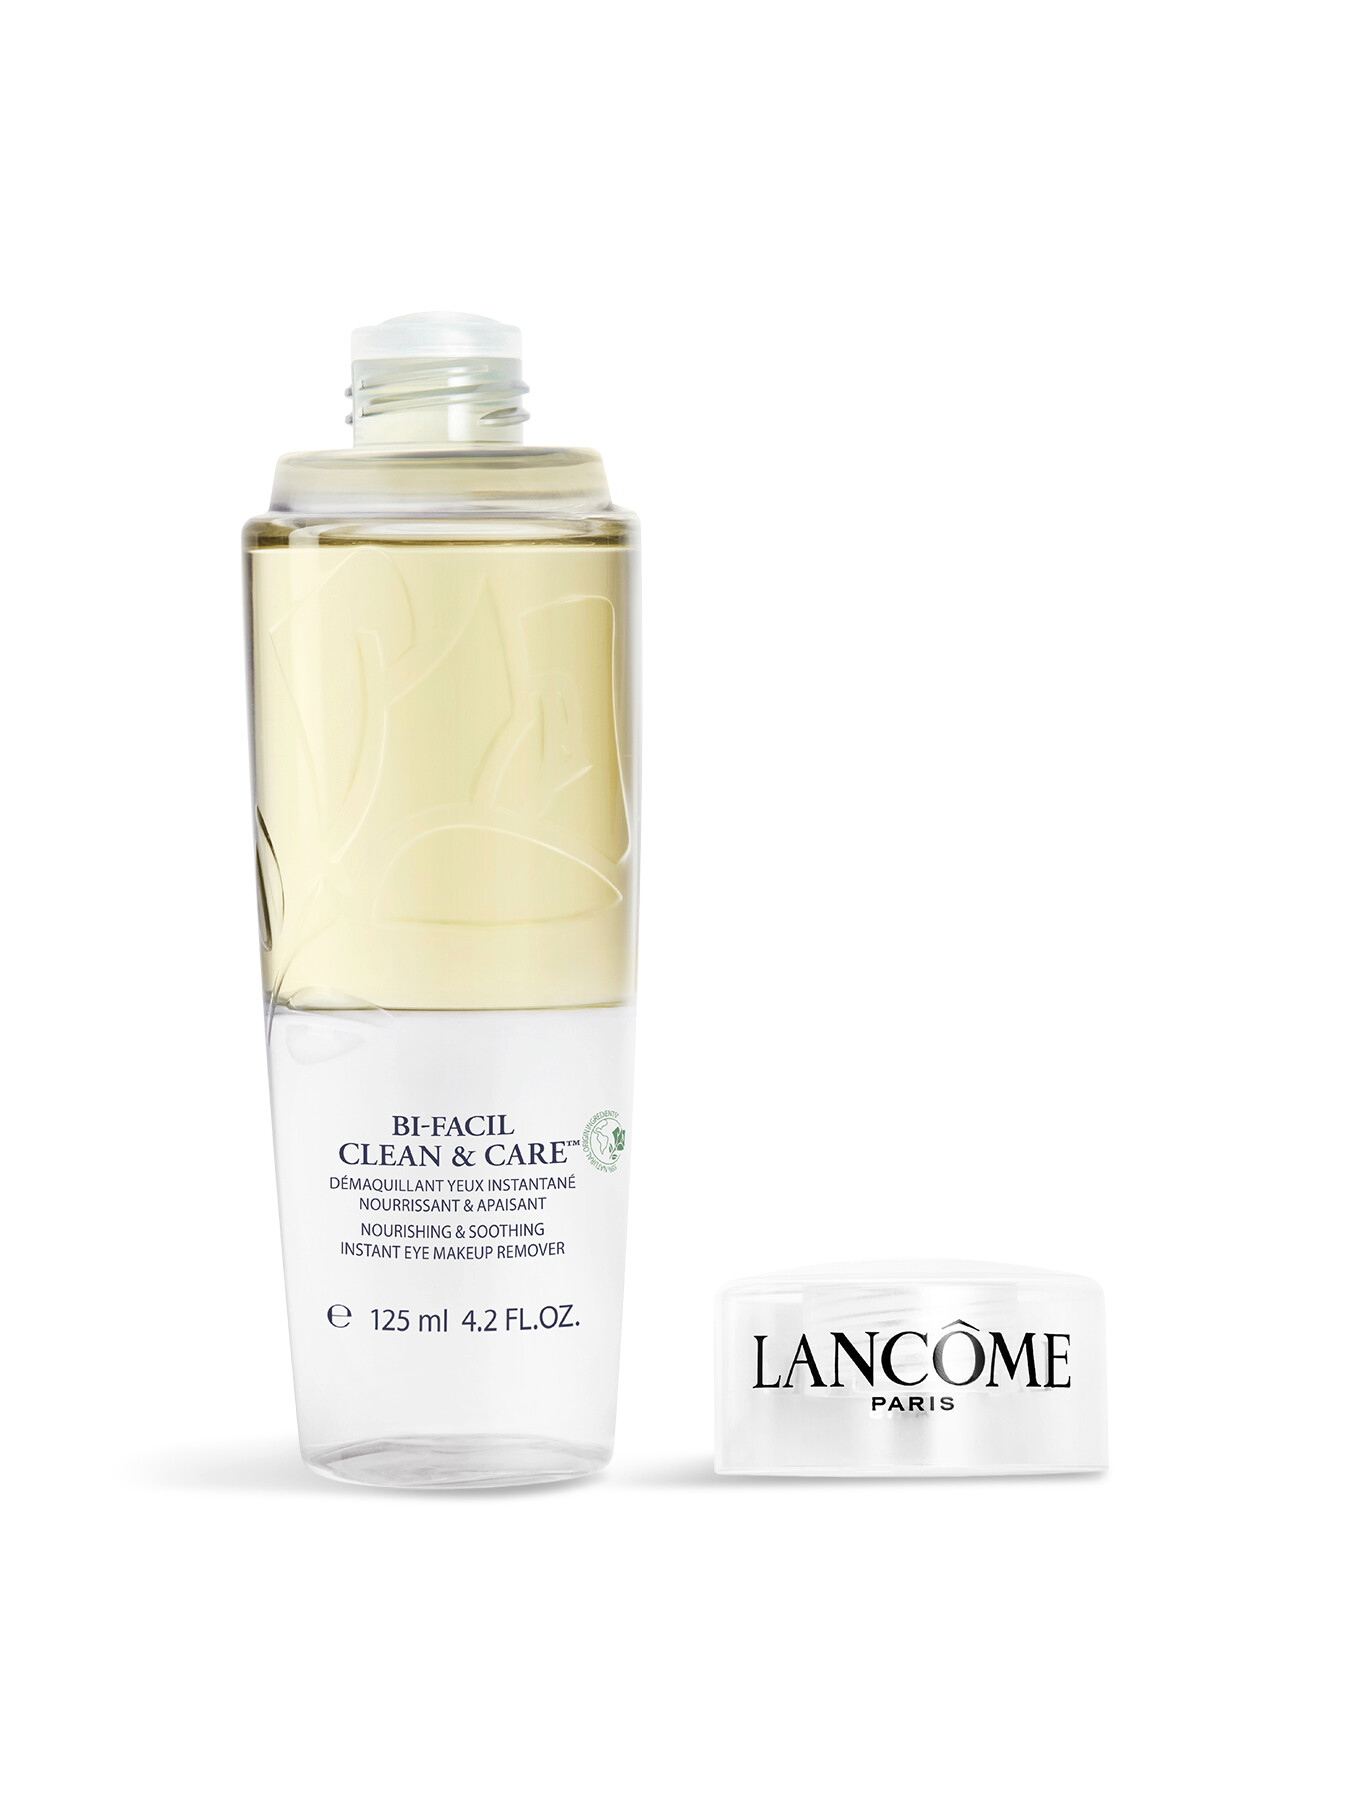 Lancôme Bi-facil Eye Cln Care  B125ml In White